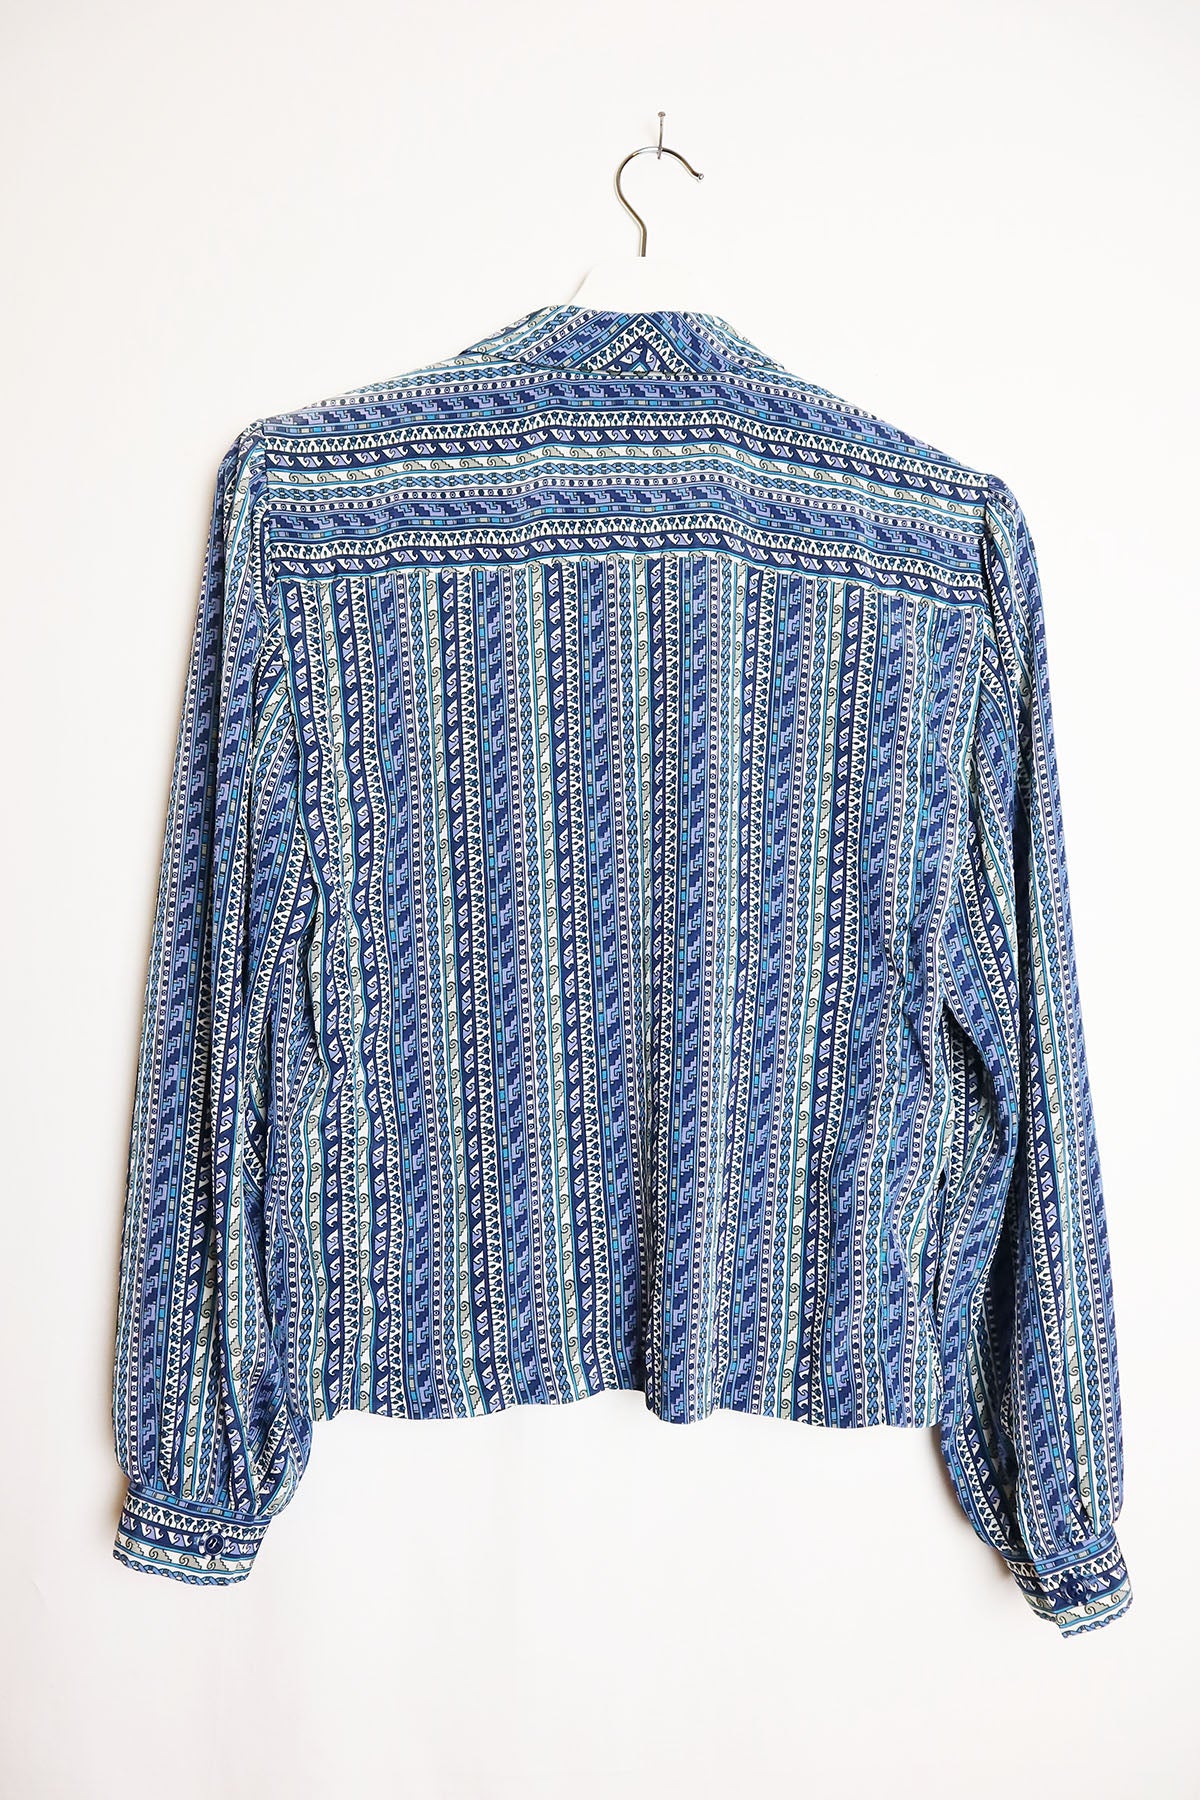 Handmade Bluse Vintage Ethno Streifen ( Gr. S )